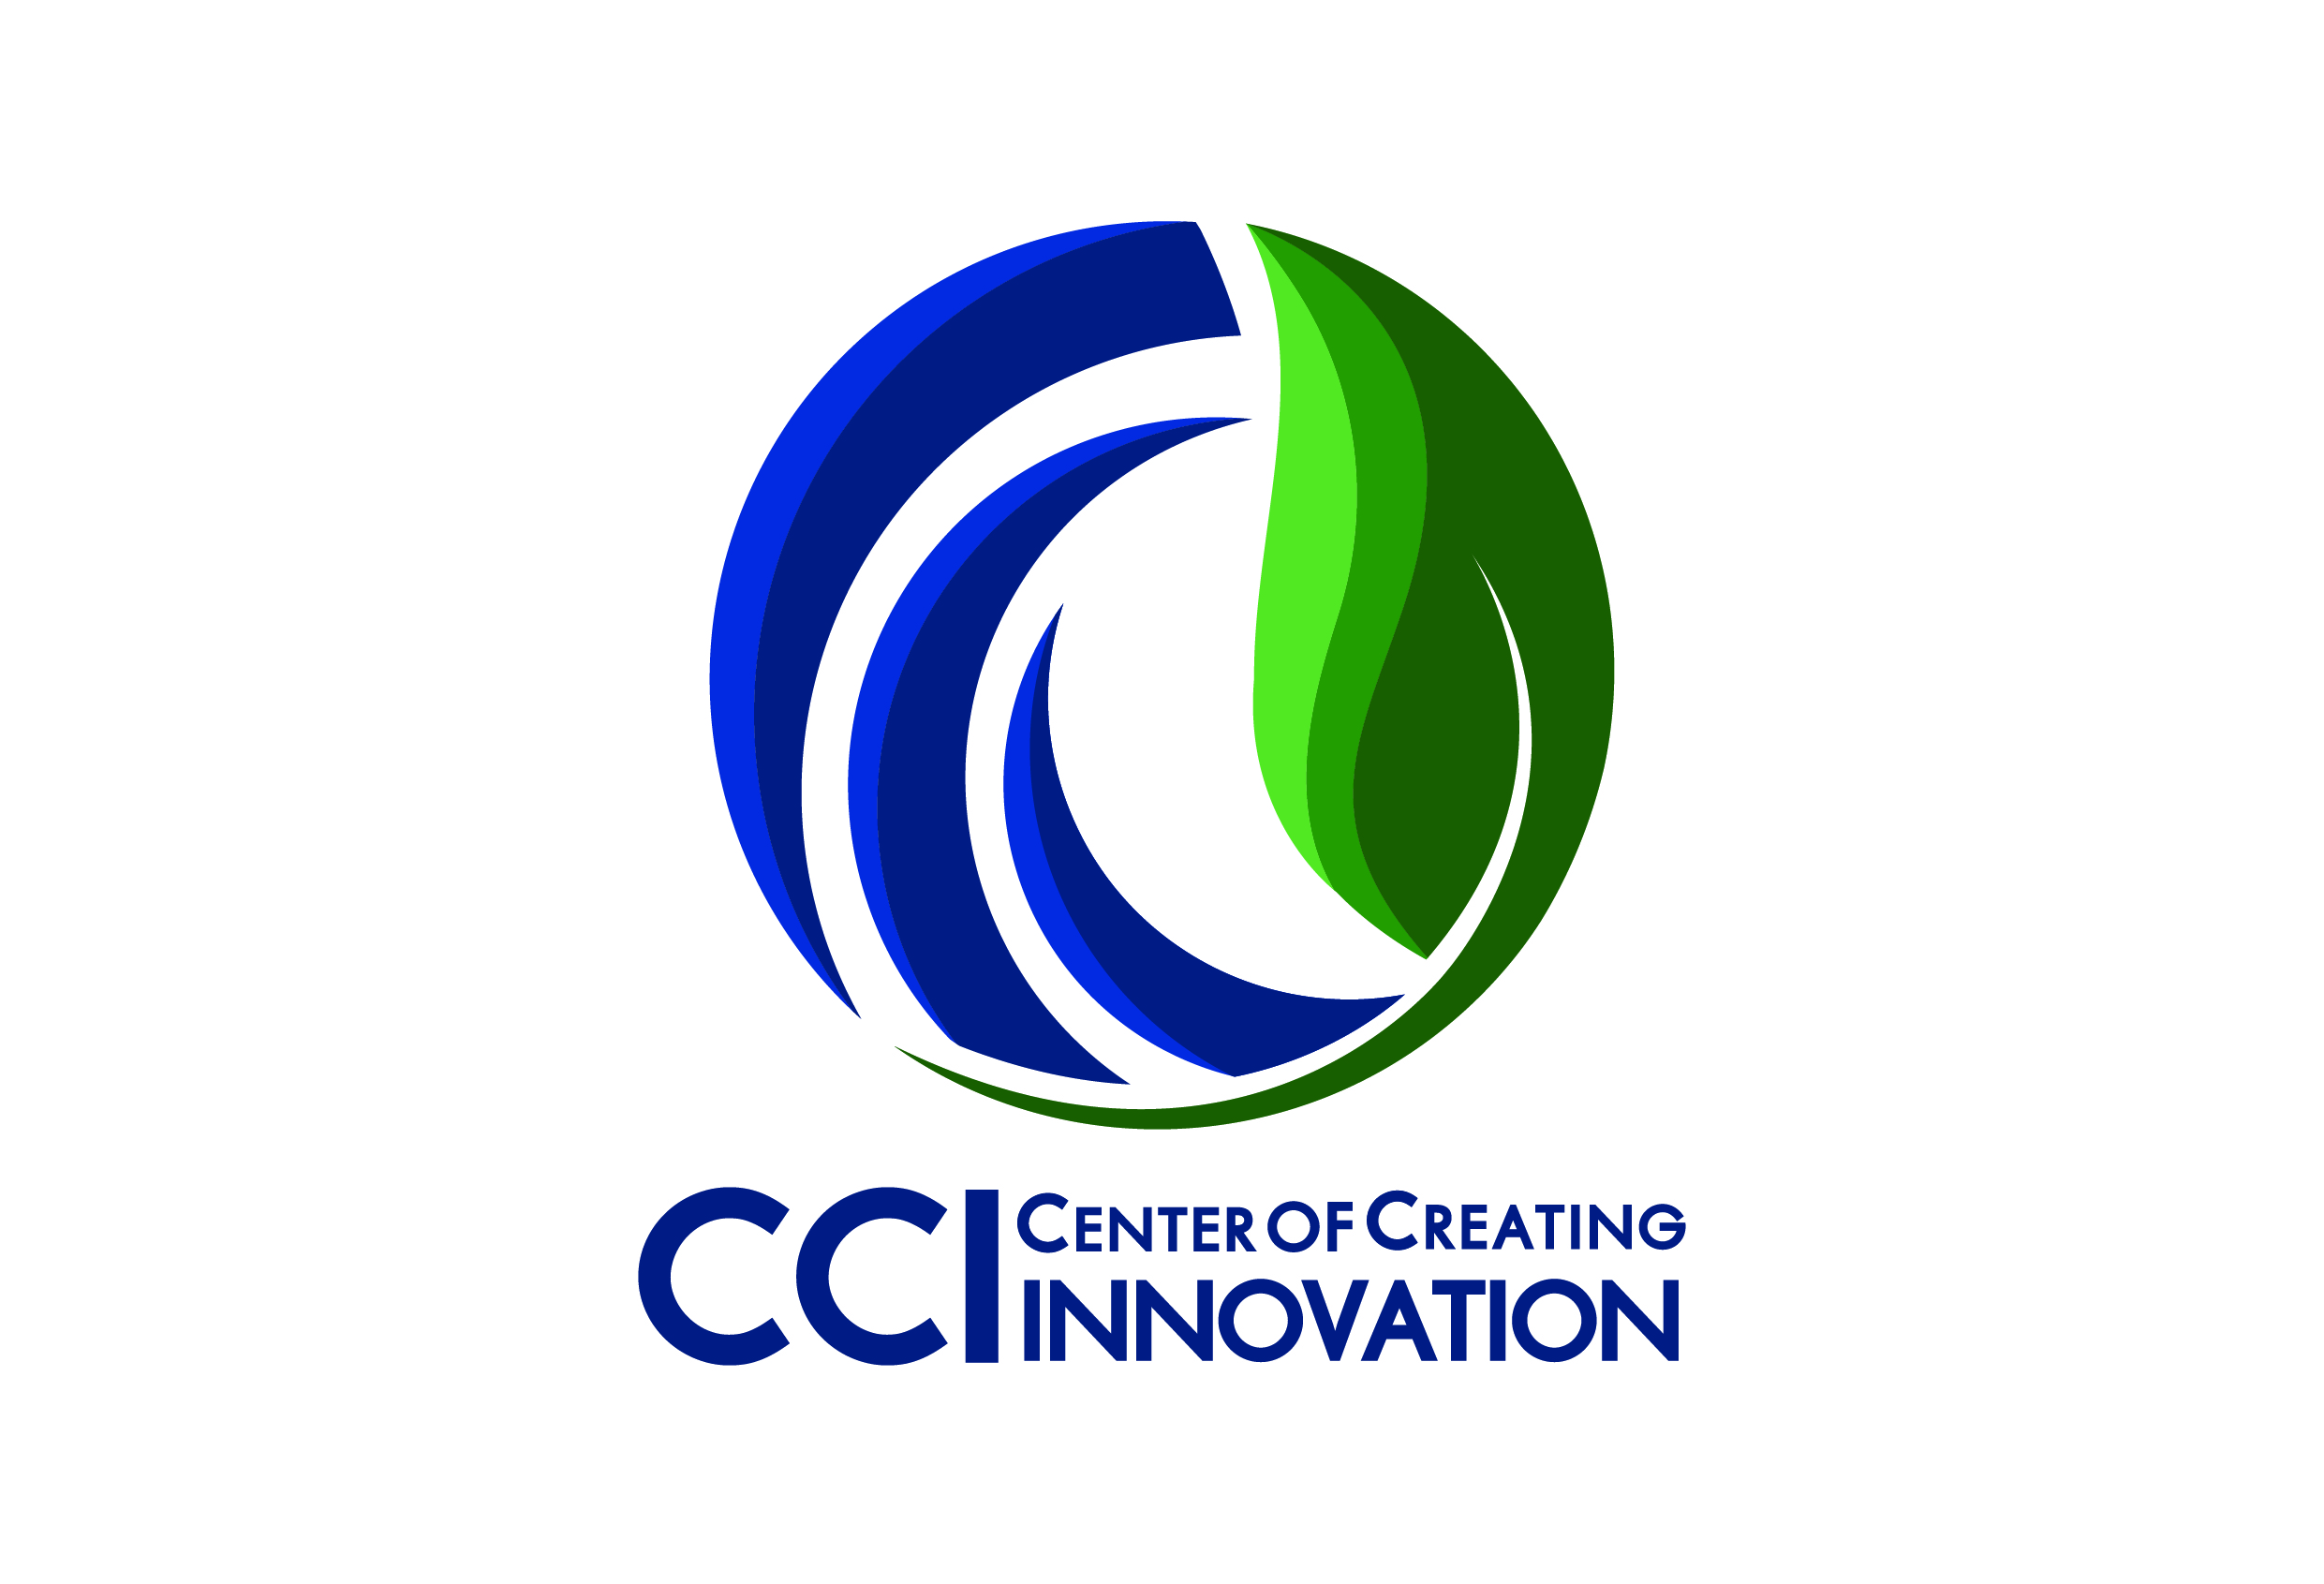 cci_logo.jpg